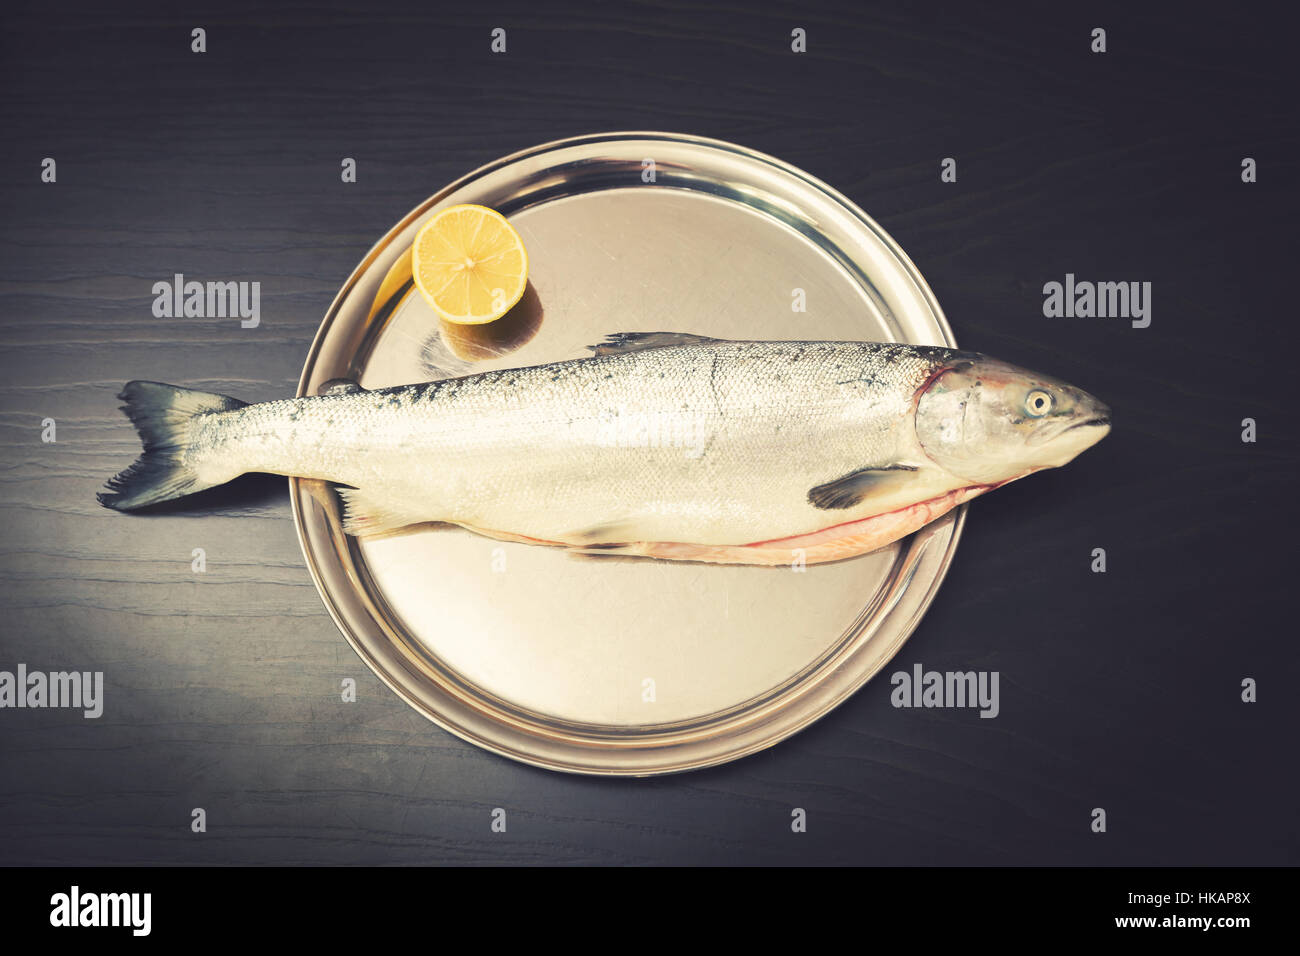 Pescado salmón con limón sobre la bandeja de metal Foto de stock